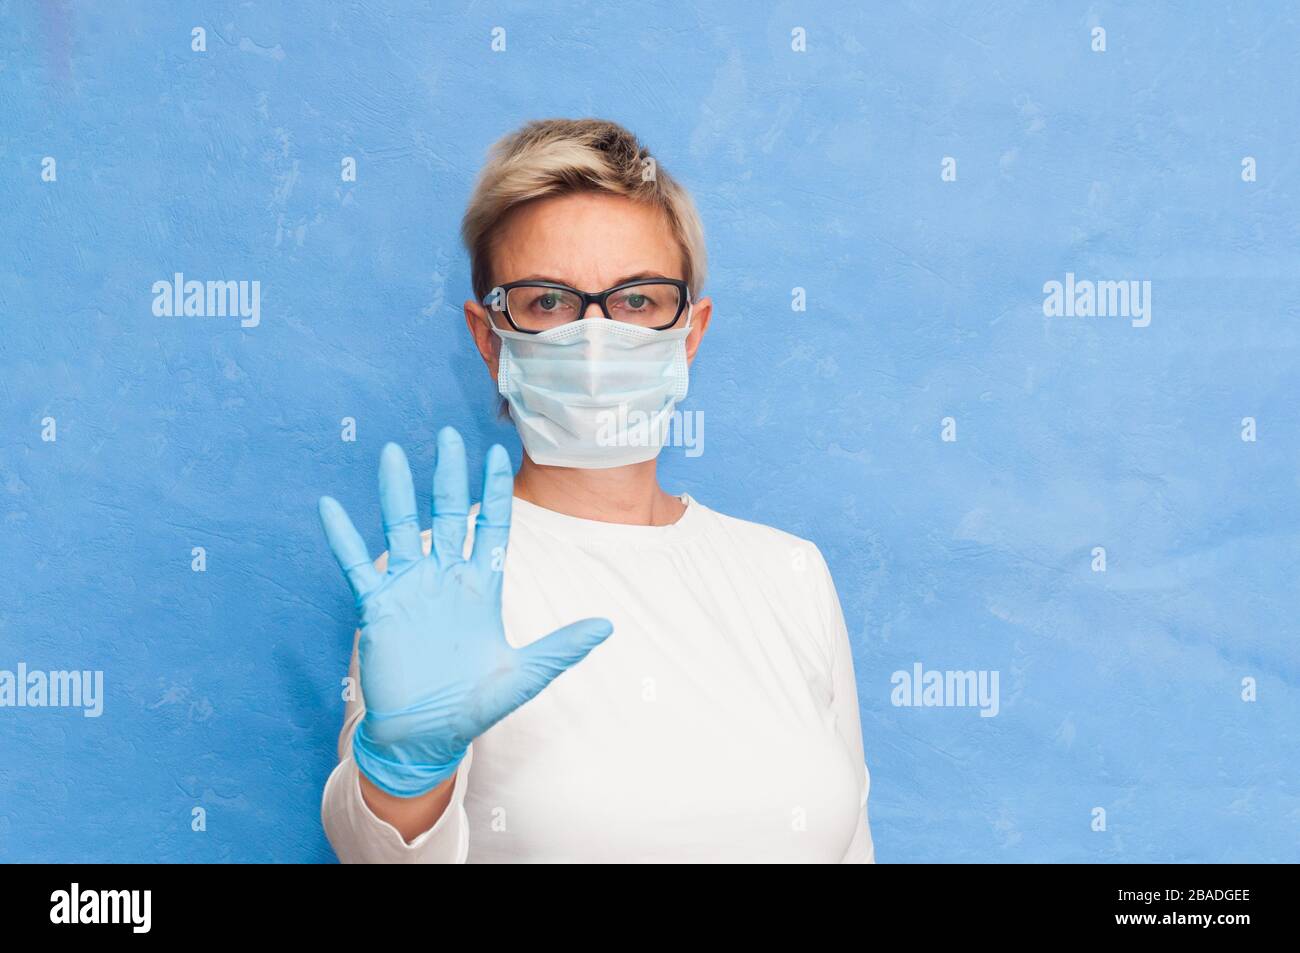 L'infermiere mostra le misure di sicurezza per il virus, indossando una maschera sanitaria e guanti, avverte la gente circa la diffusione del coronavirus. Foto Stock